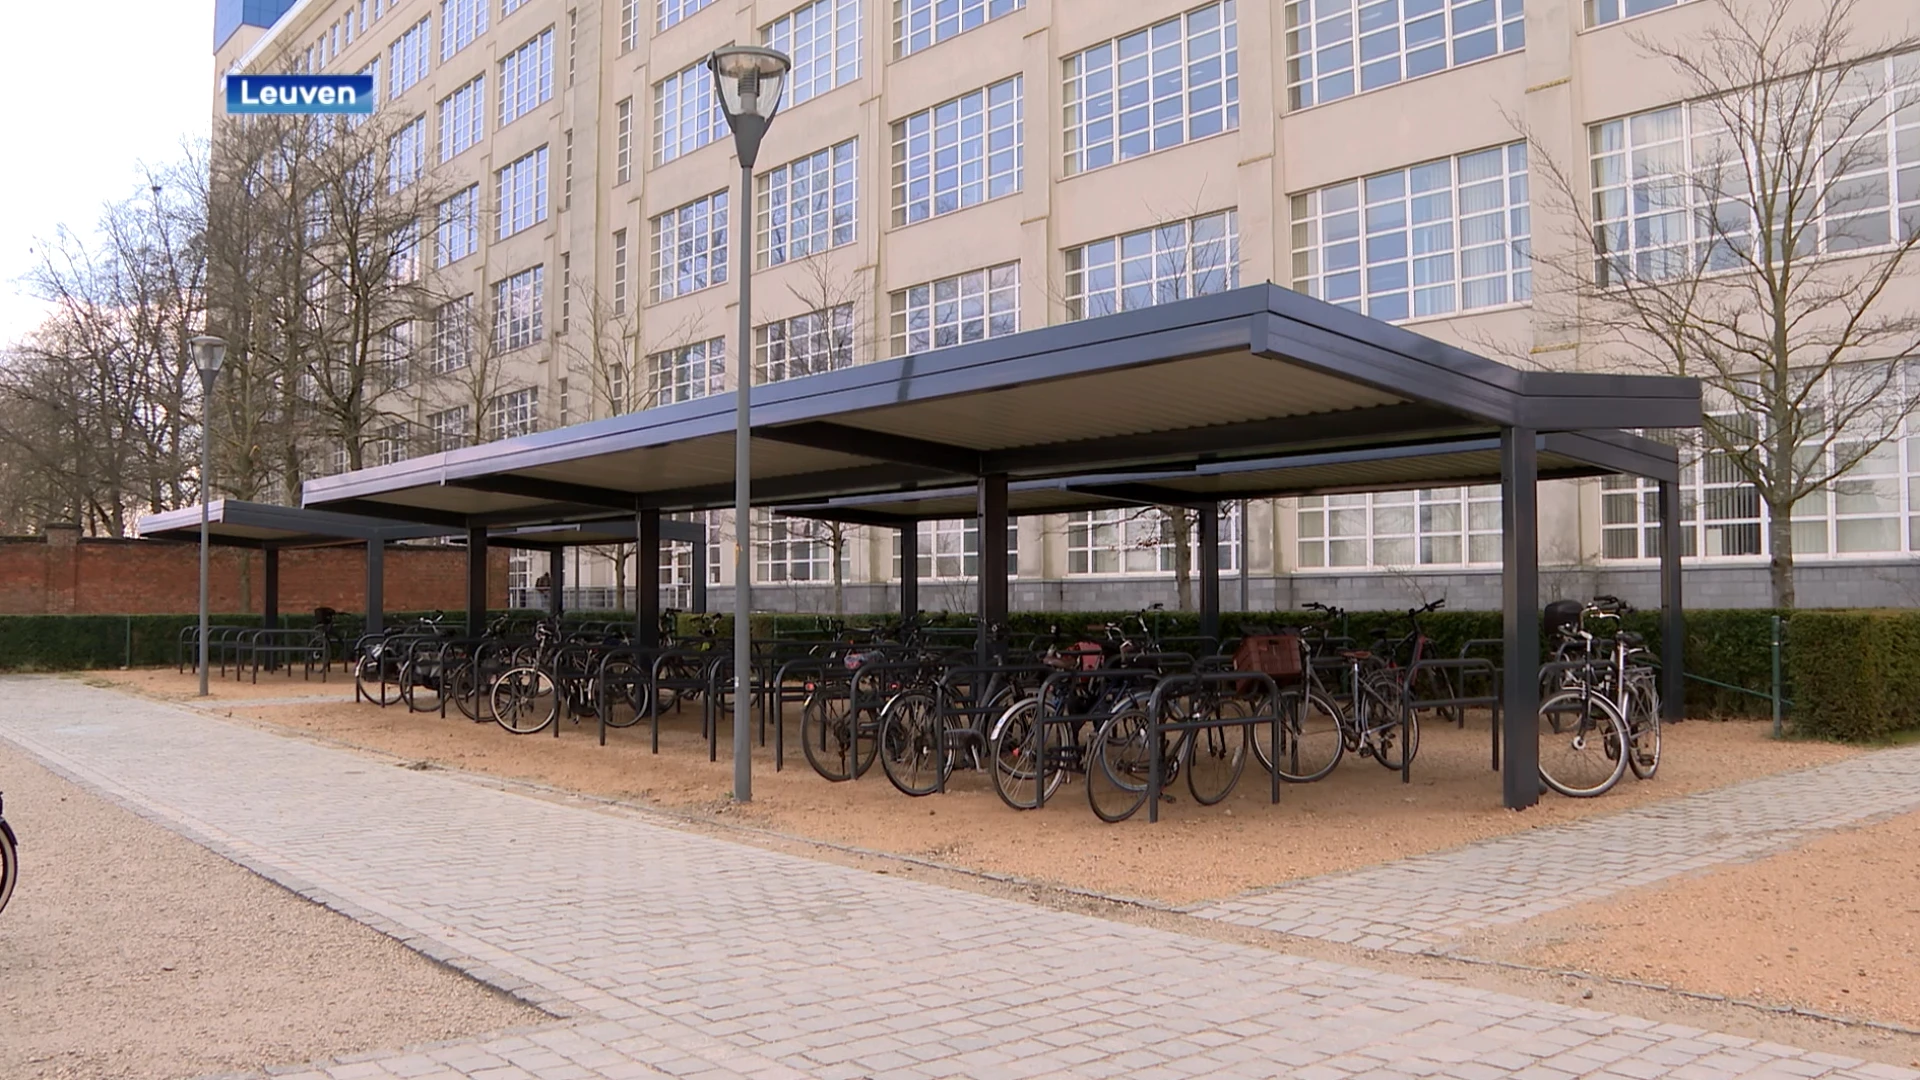 Stad Leuven investeert in overdekte, groene fietsenstallingen: "Groen dak kan water absorberen"